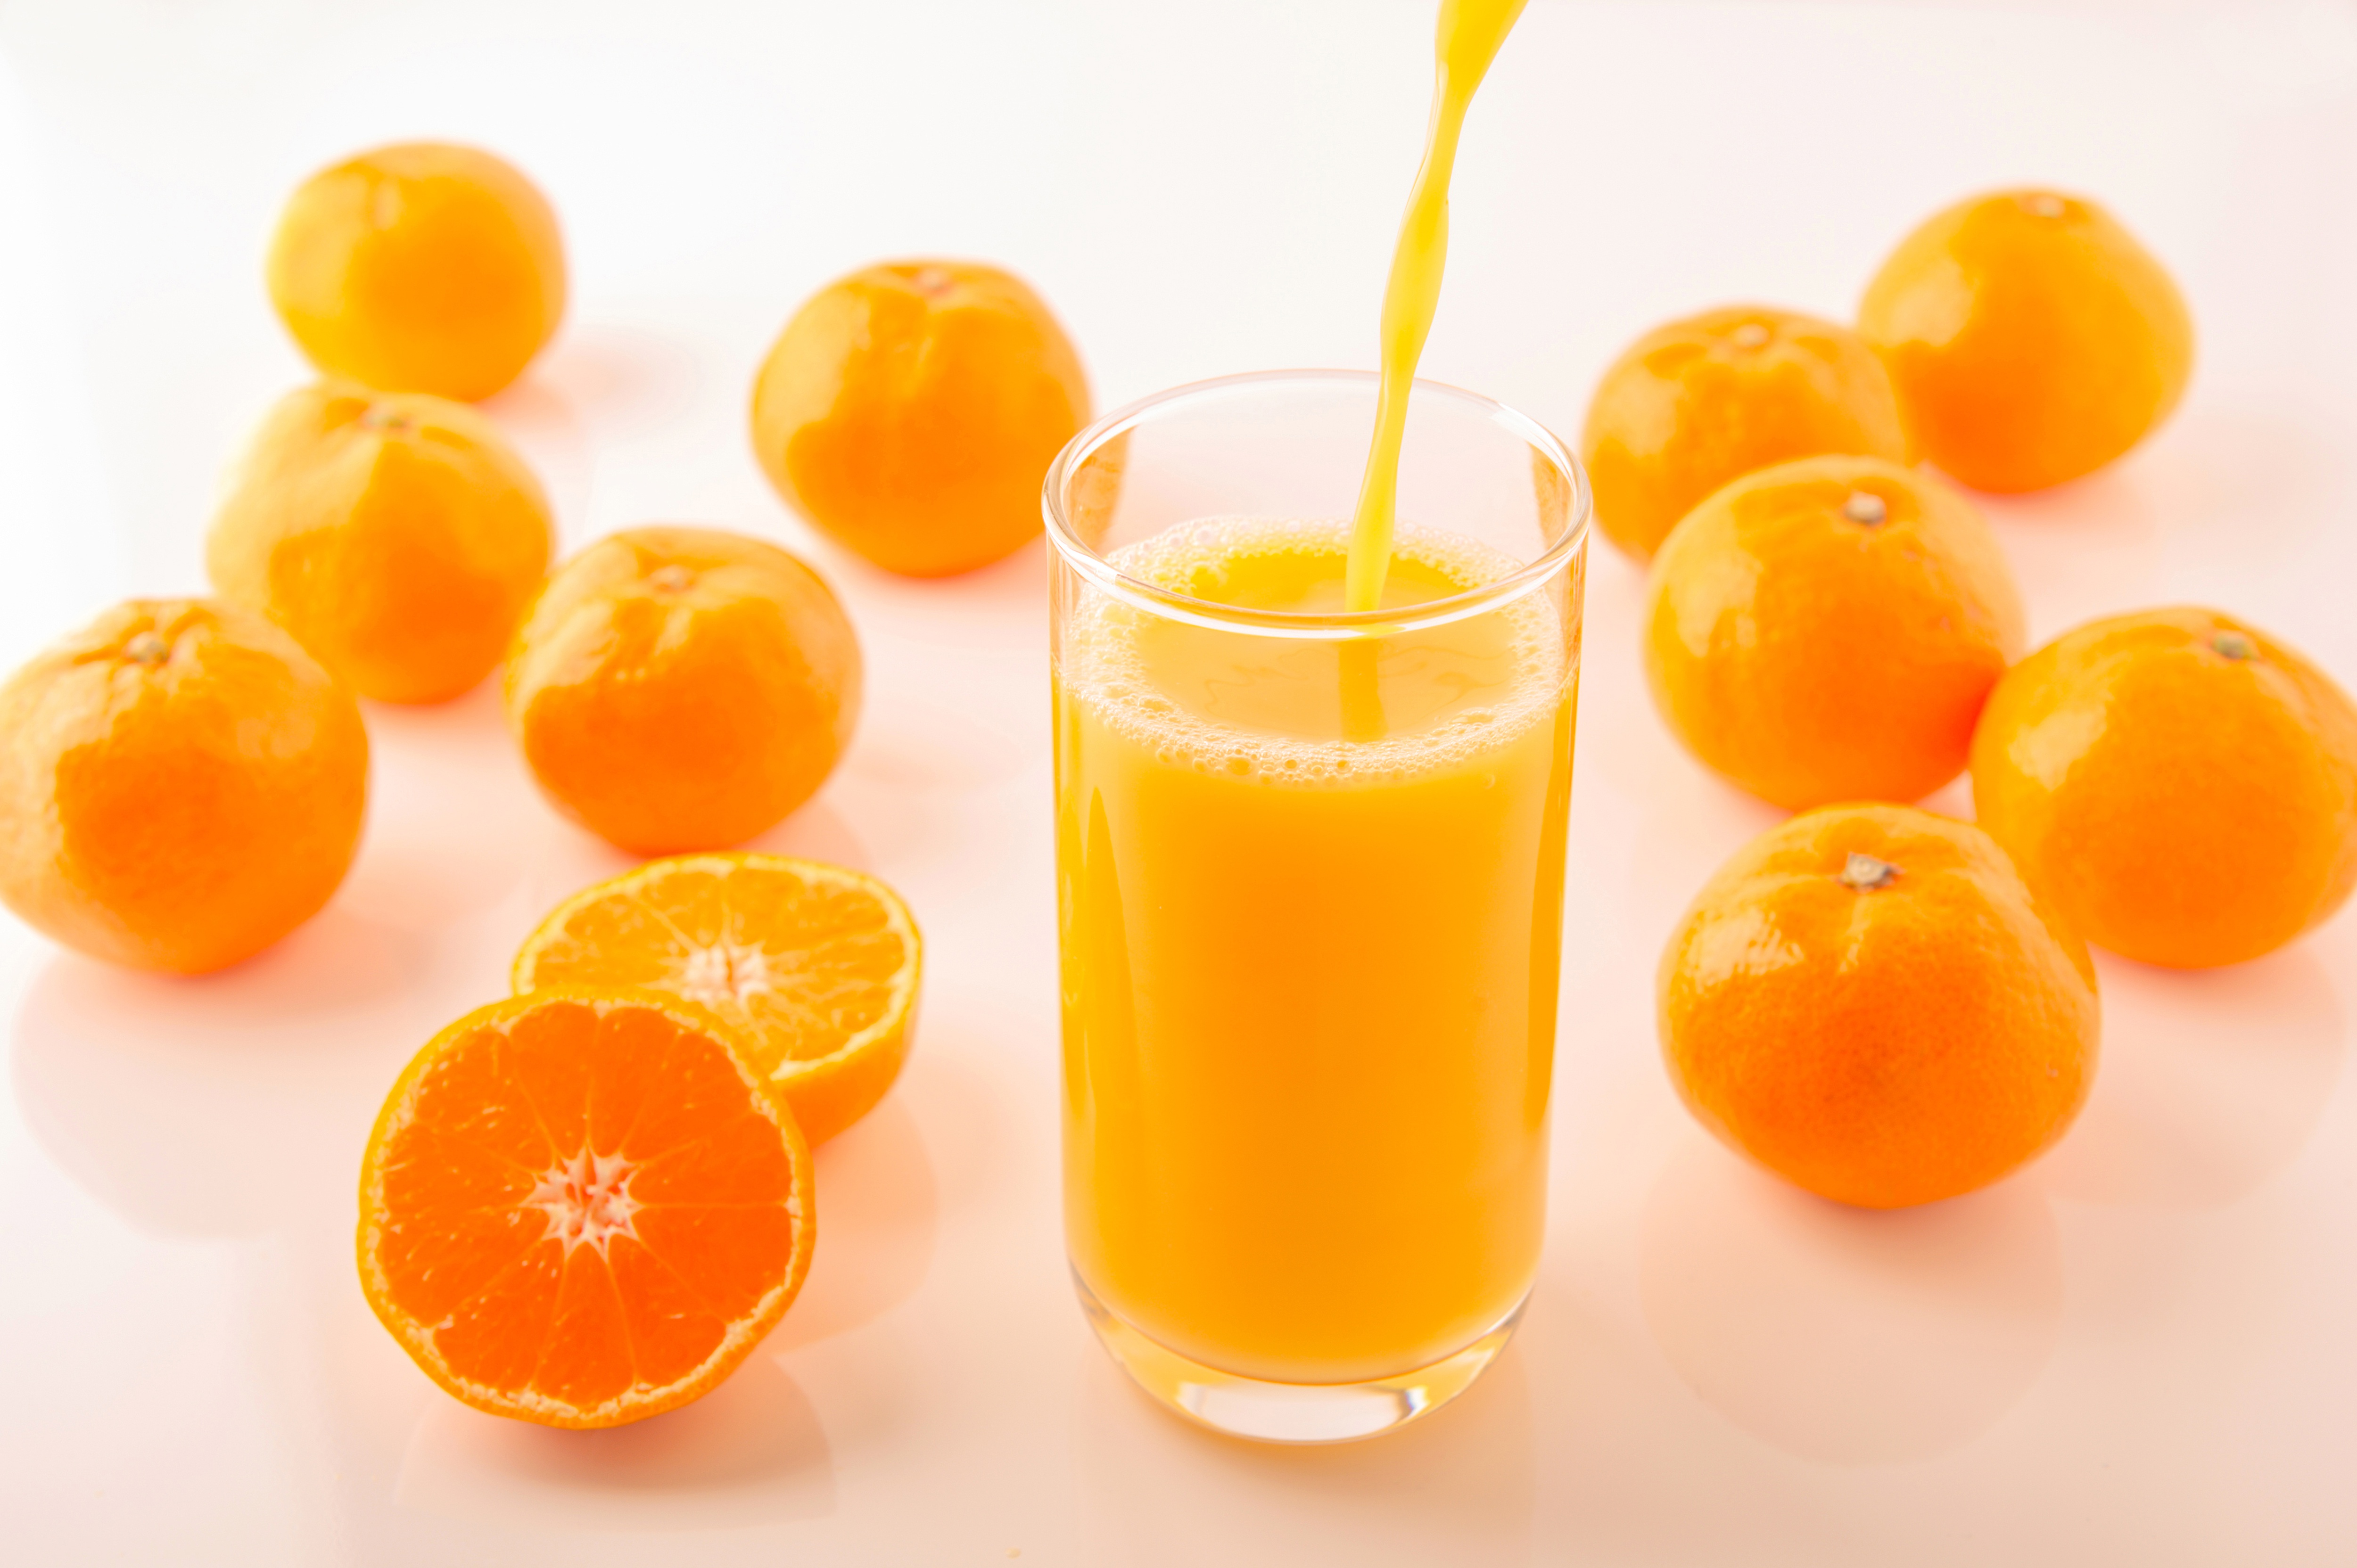 9 литров сока из 4 апельсинов!